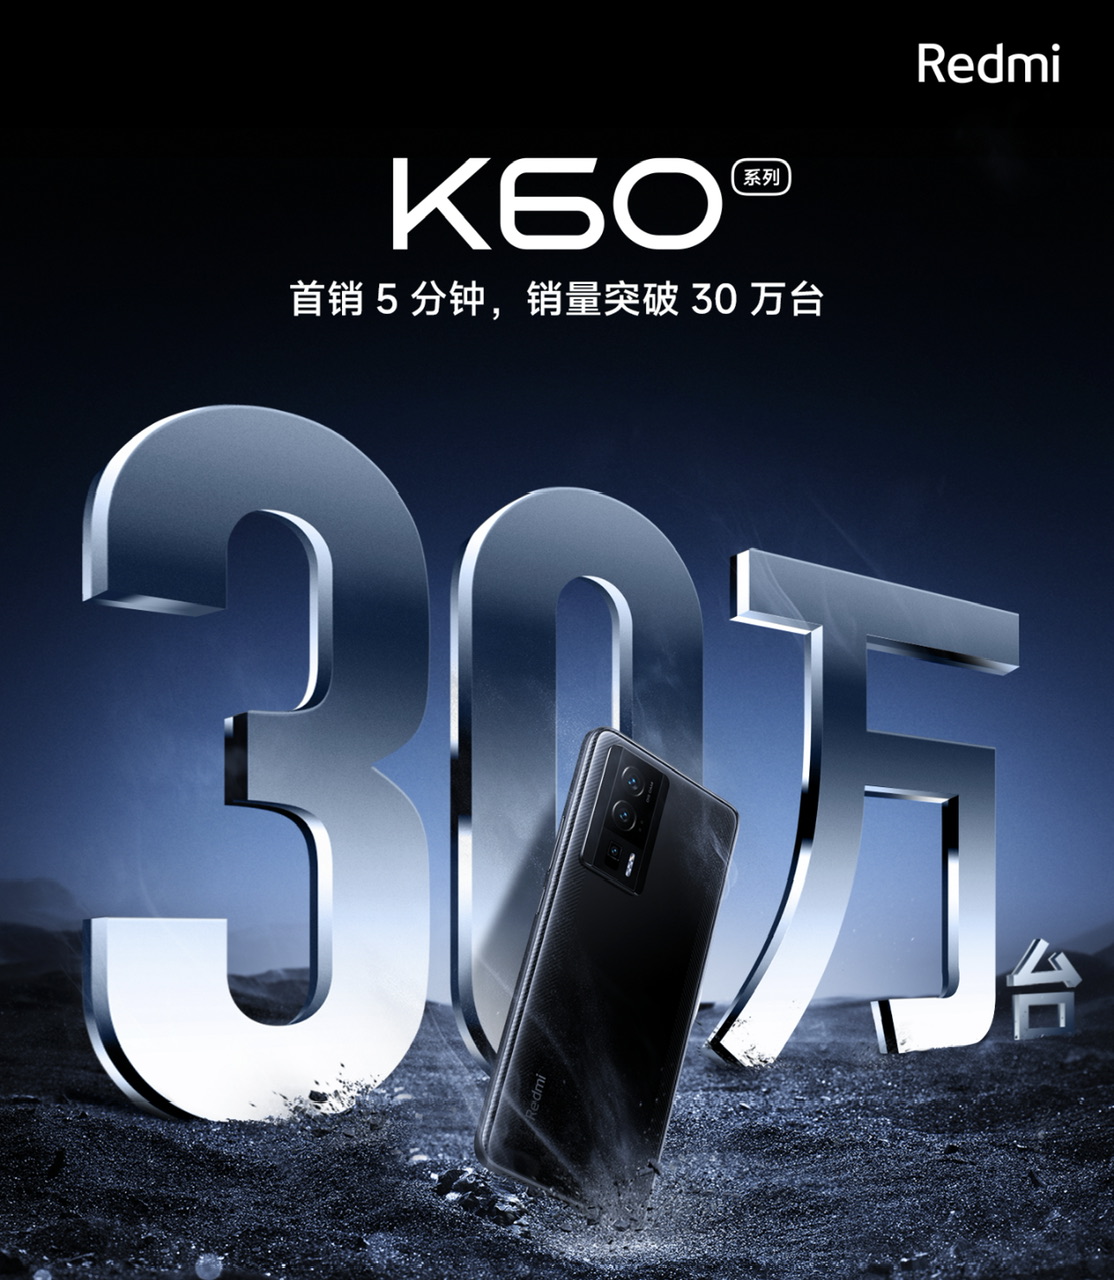 300,000 unit Redmi K60 Series berjaya di jual didalam masa 5 minit sahaja 3